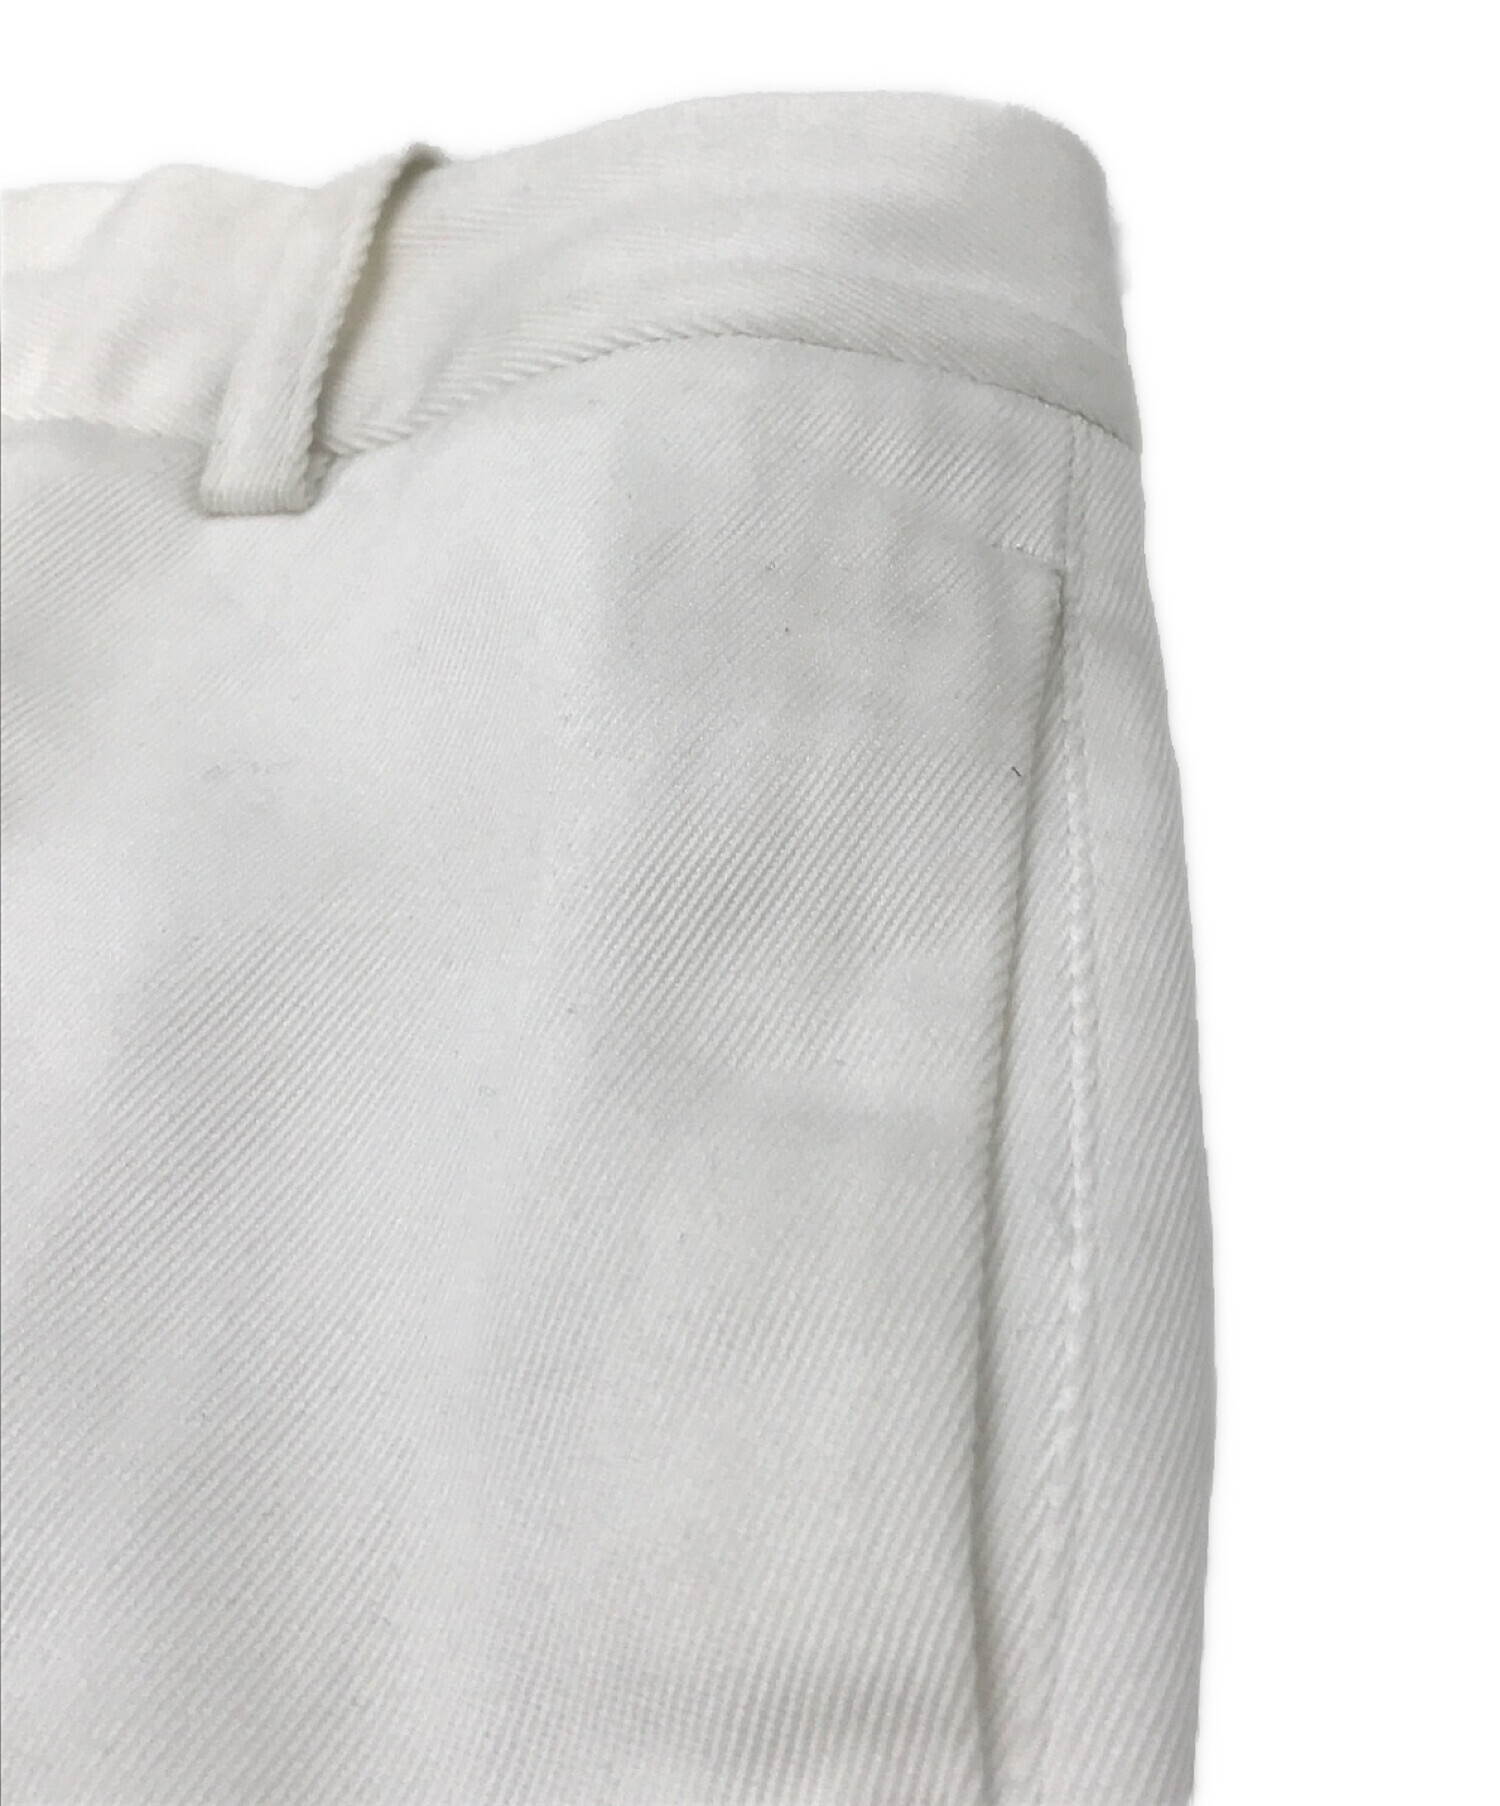 Deuxieme Classe (ドゥーズィエム クラス) elegance パンツ ホワイト サイズ:34